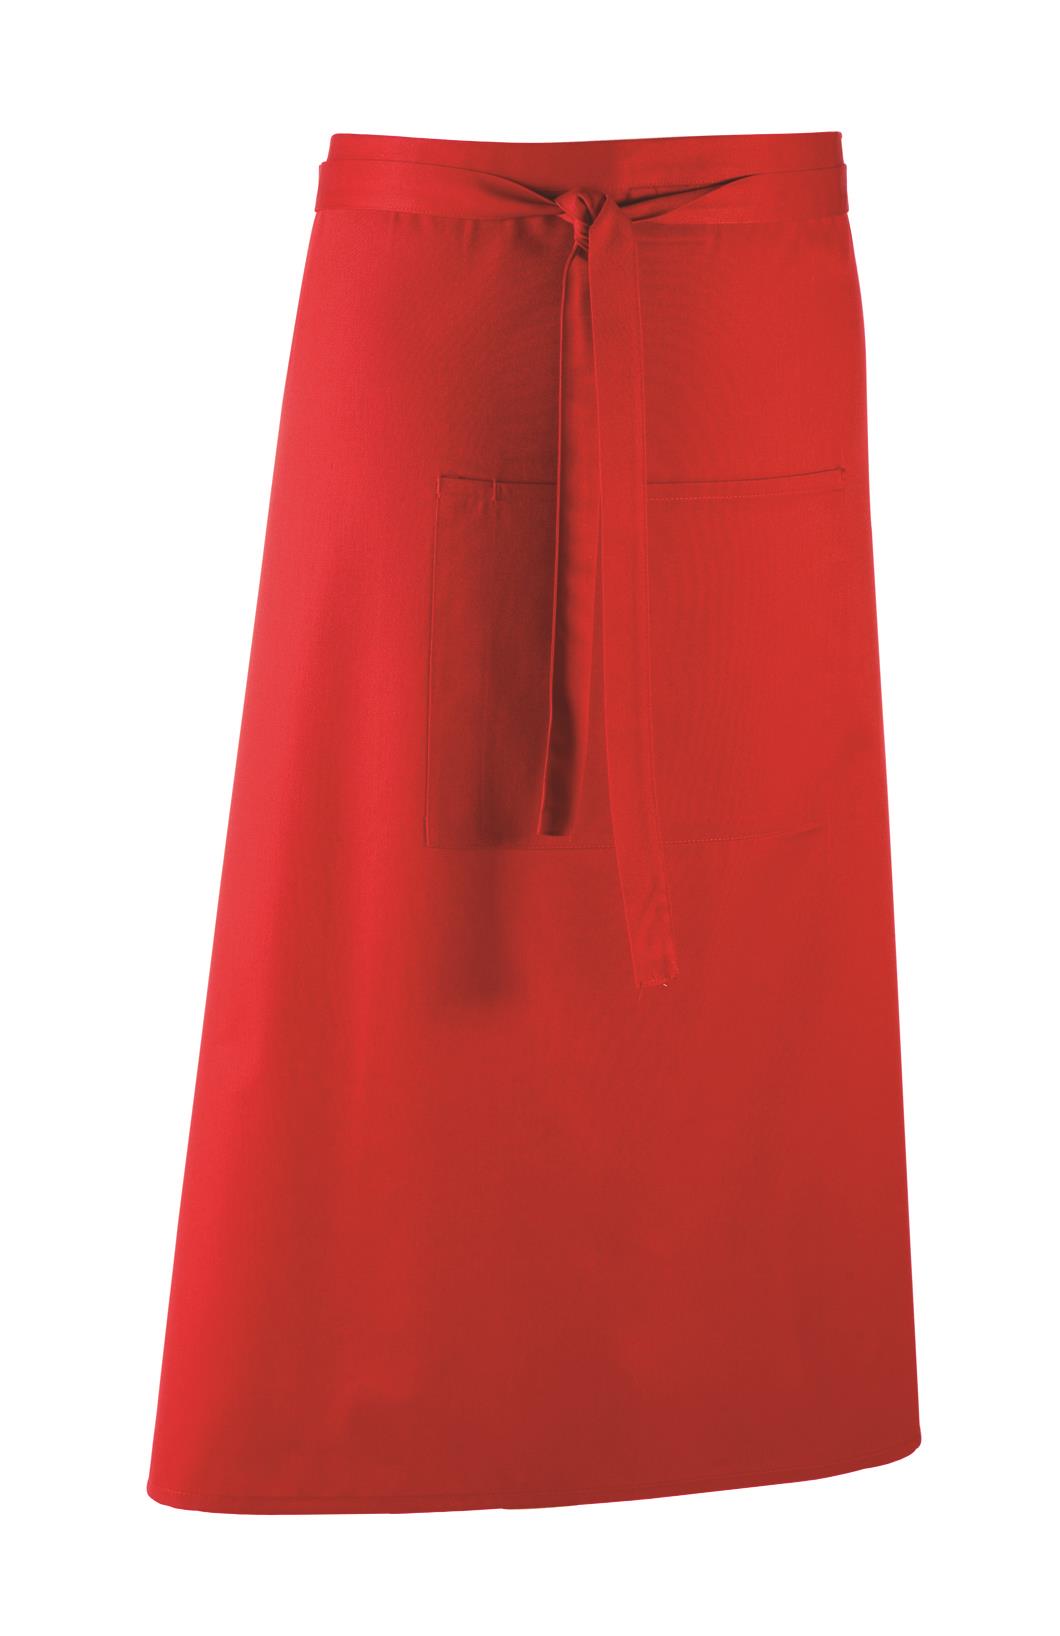 Colours Bistroschürze 90 x 80 cm Premier® Red (Pantone 200)